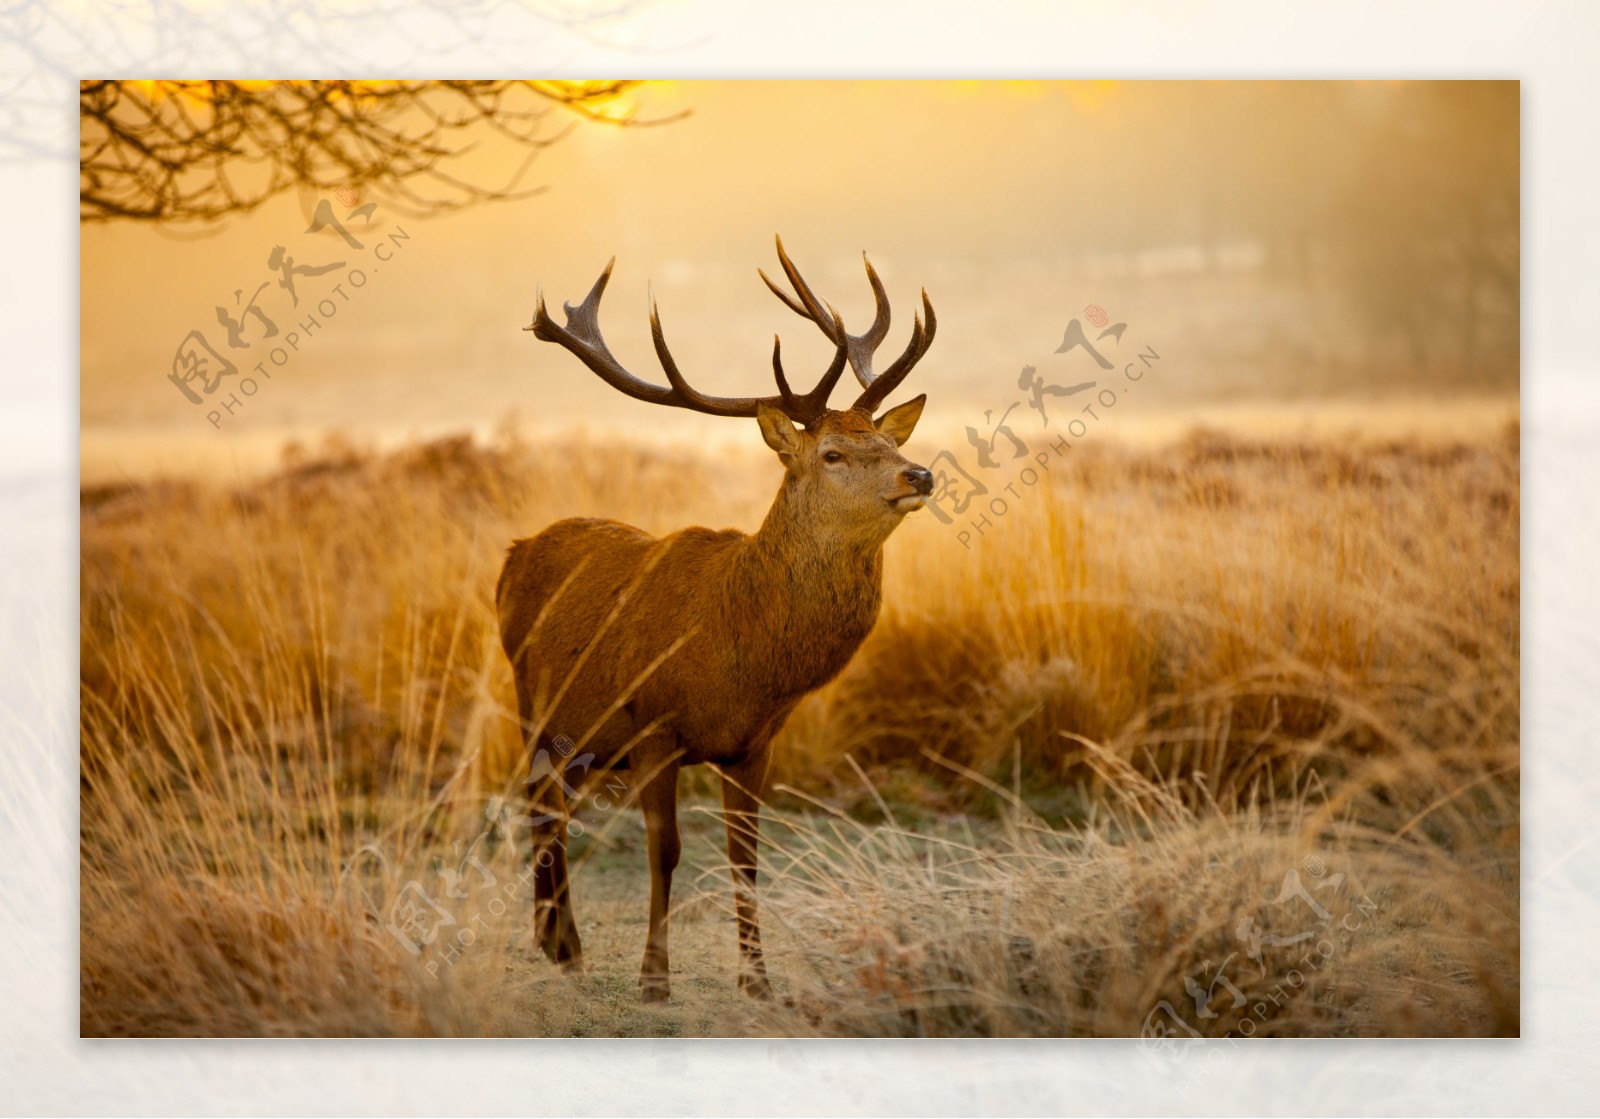 沐浴在晨光中的小鹿图片